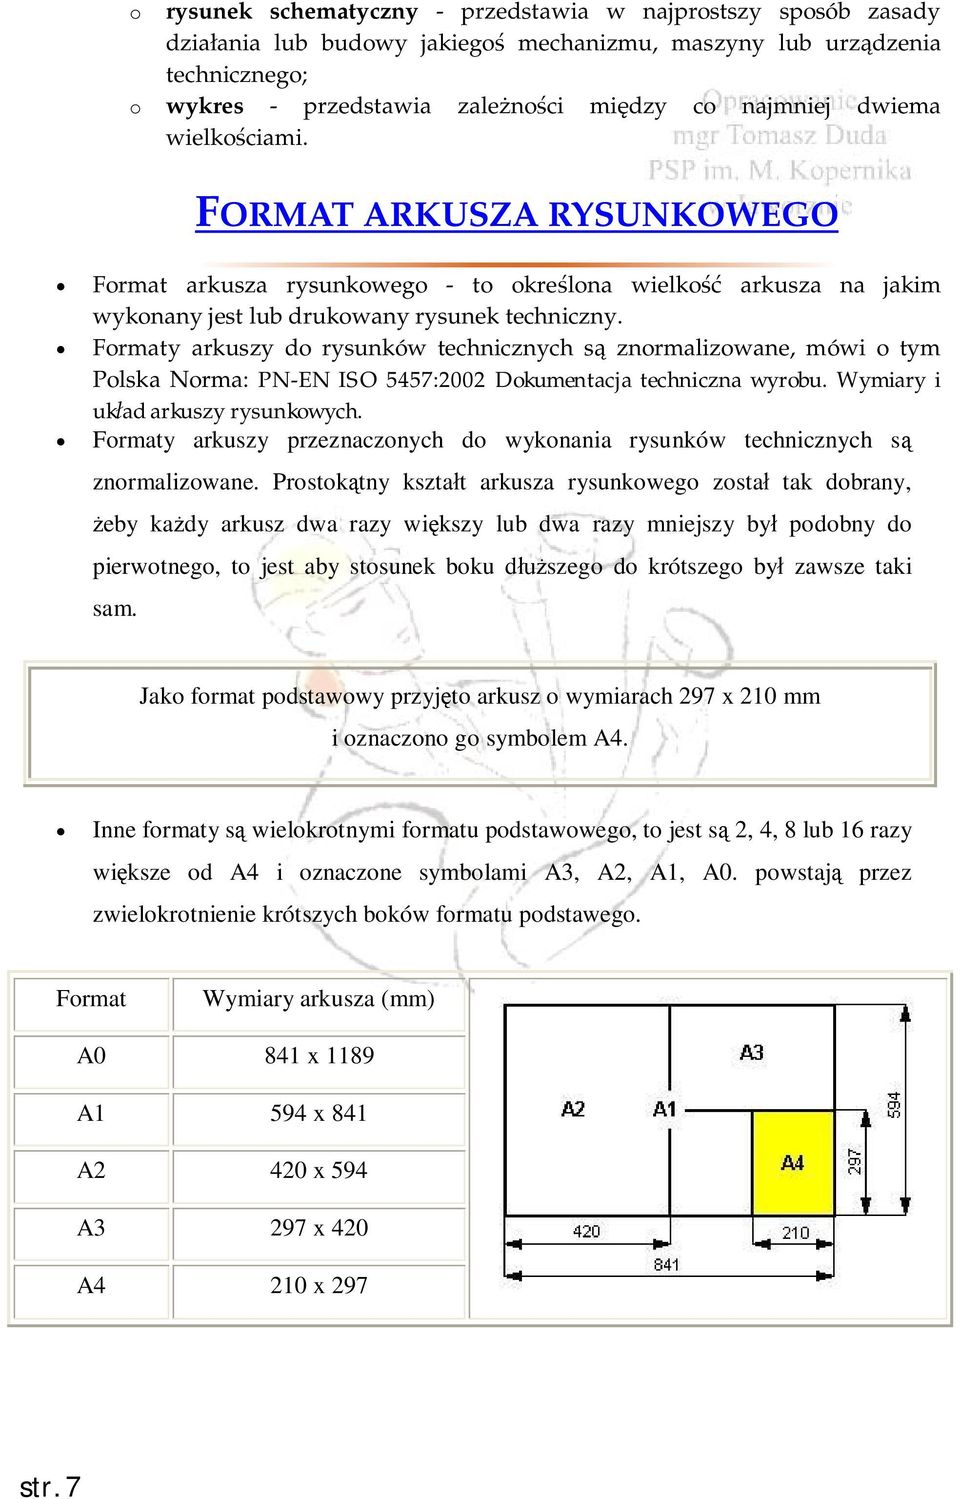 Formaty arkuszy do rysunków technicznych są znormalizowane, mówi o tym Polska Norma: PN-EN ISO 5457:2002 Dokumentacja techniczna wyrobu. Wymiary i układ arkuszy rysunkowych.